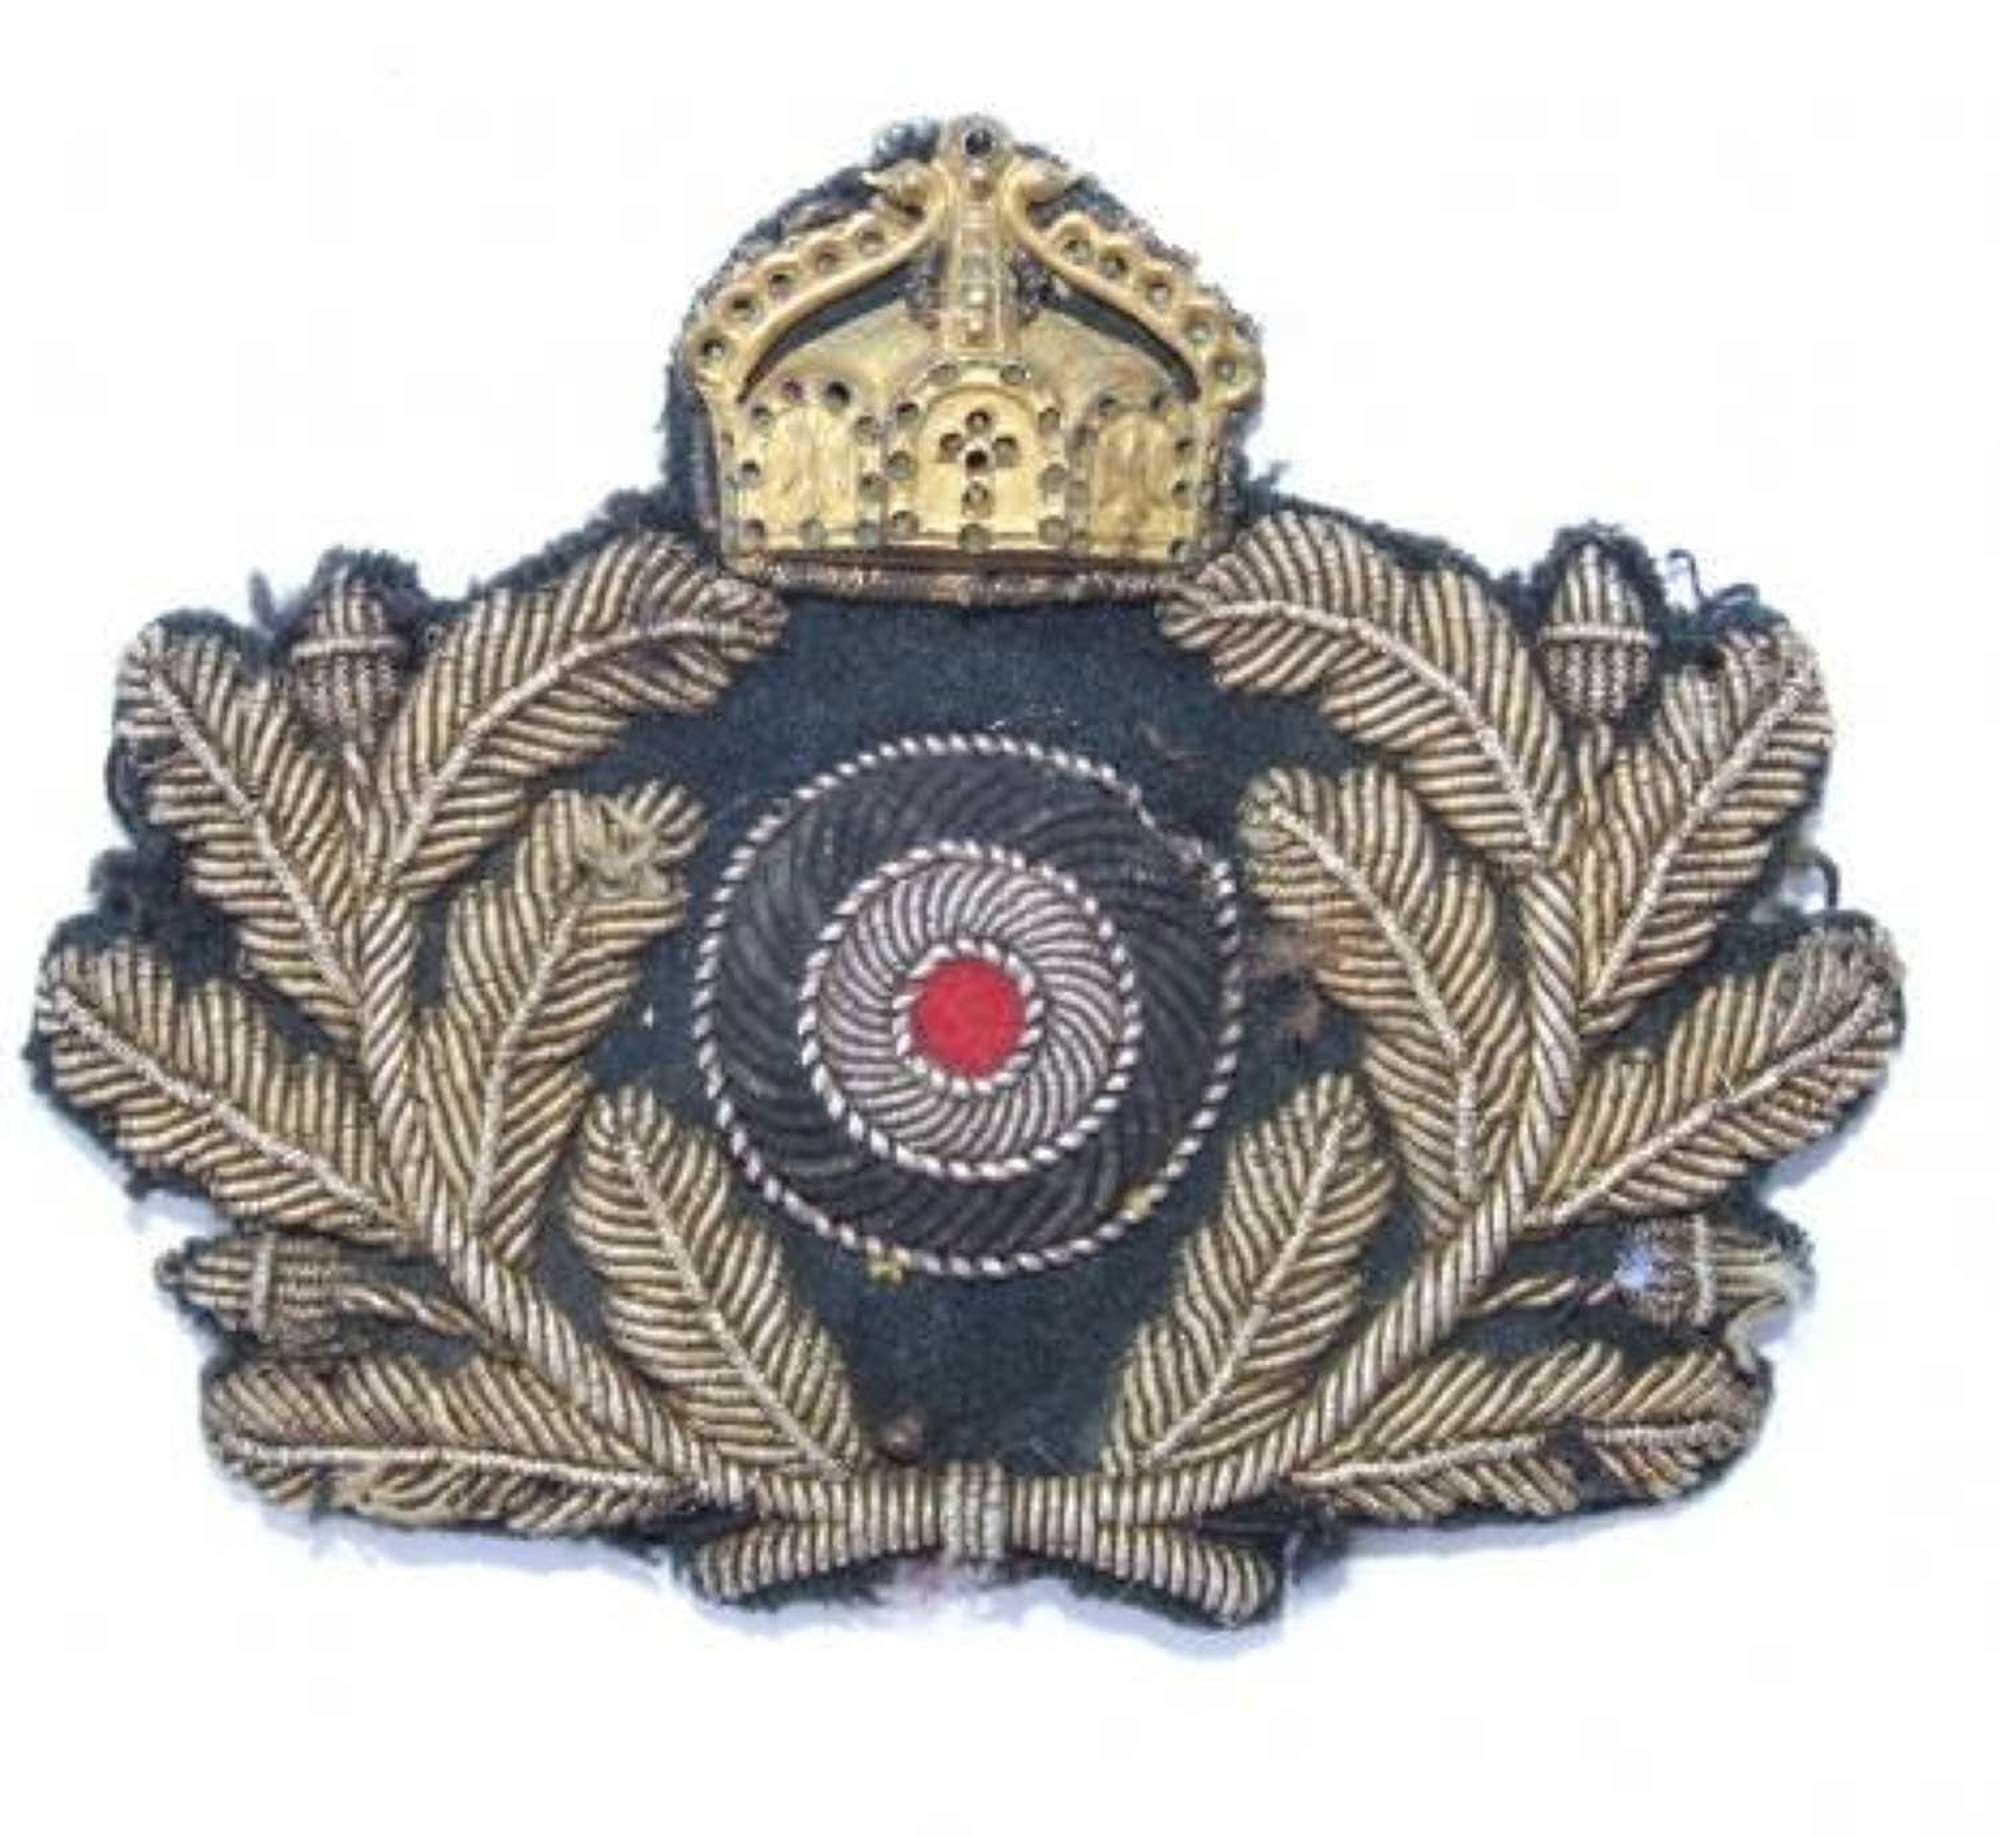 Imperial German Naval (Kaiserliche Marine) Officer's Cap Badge